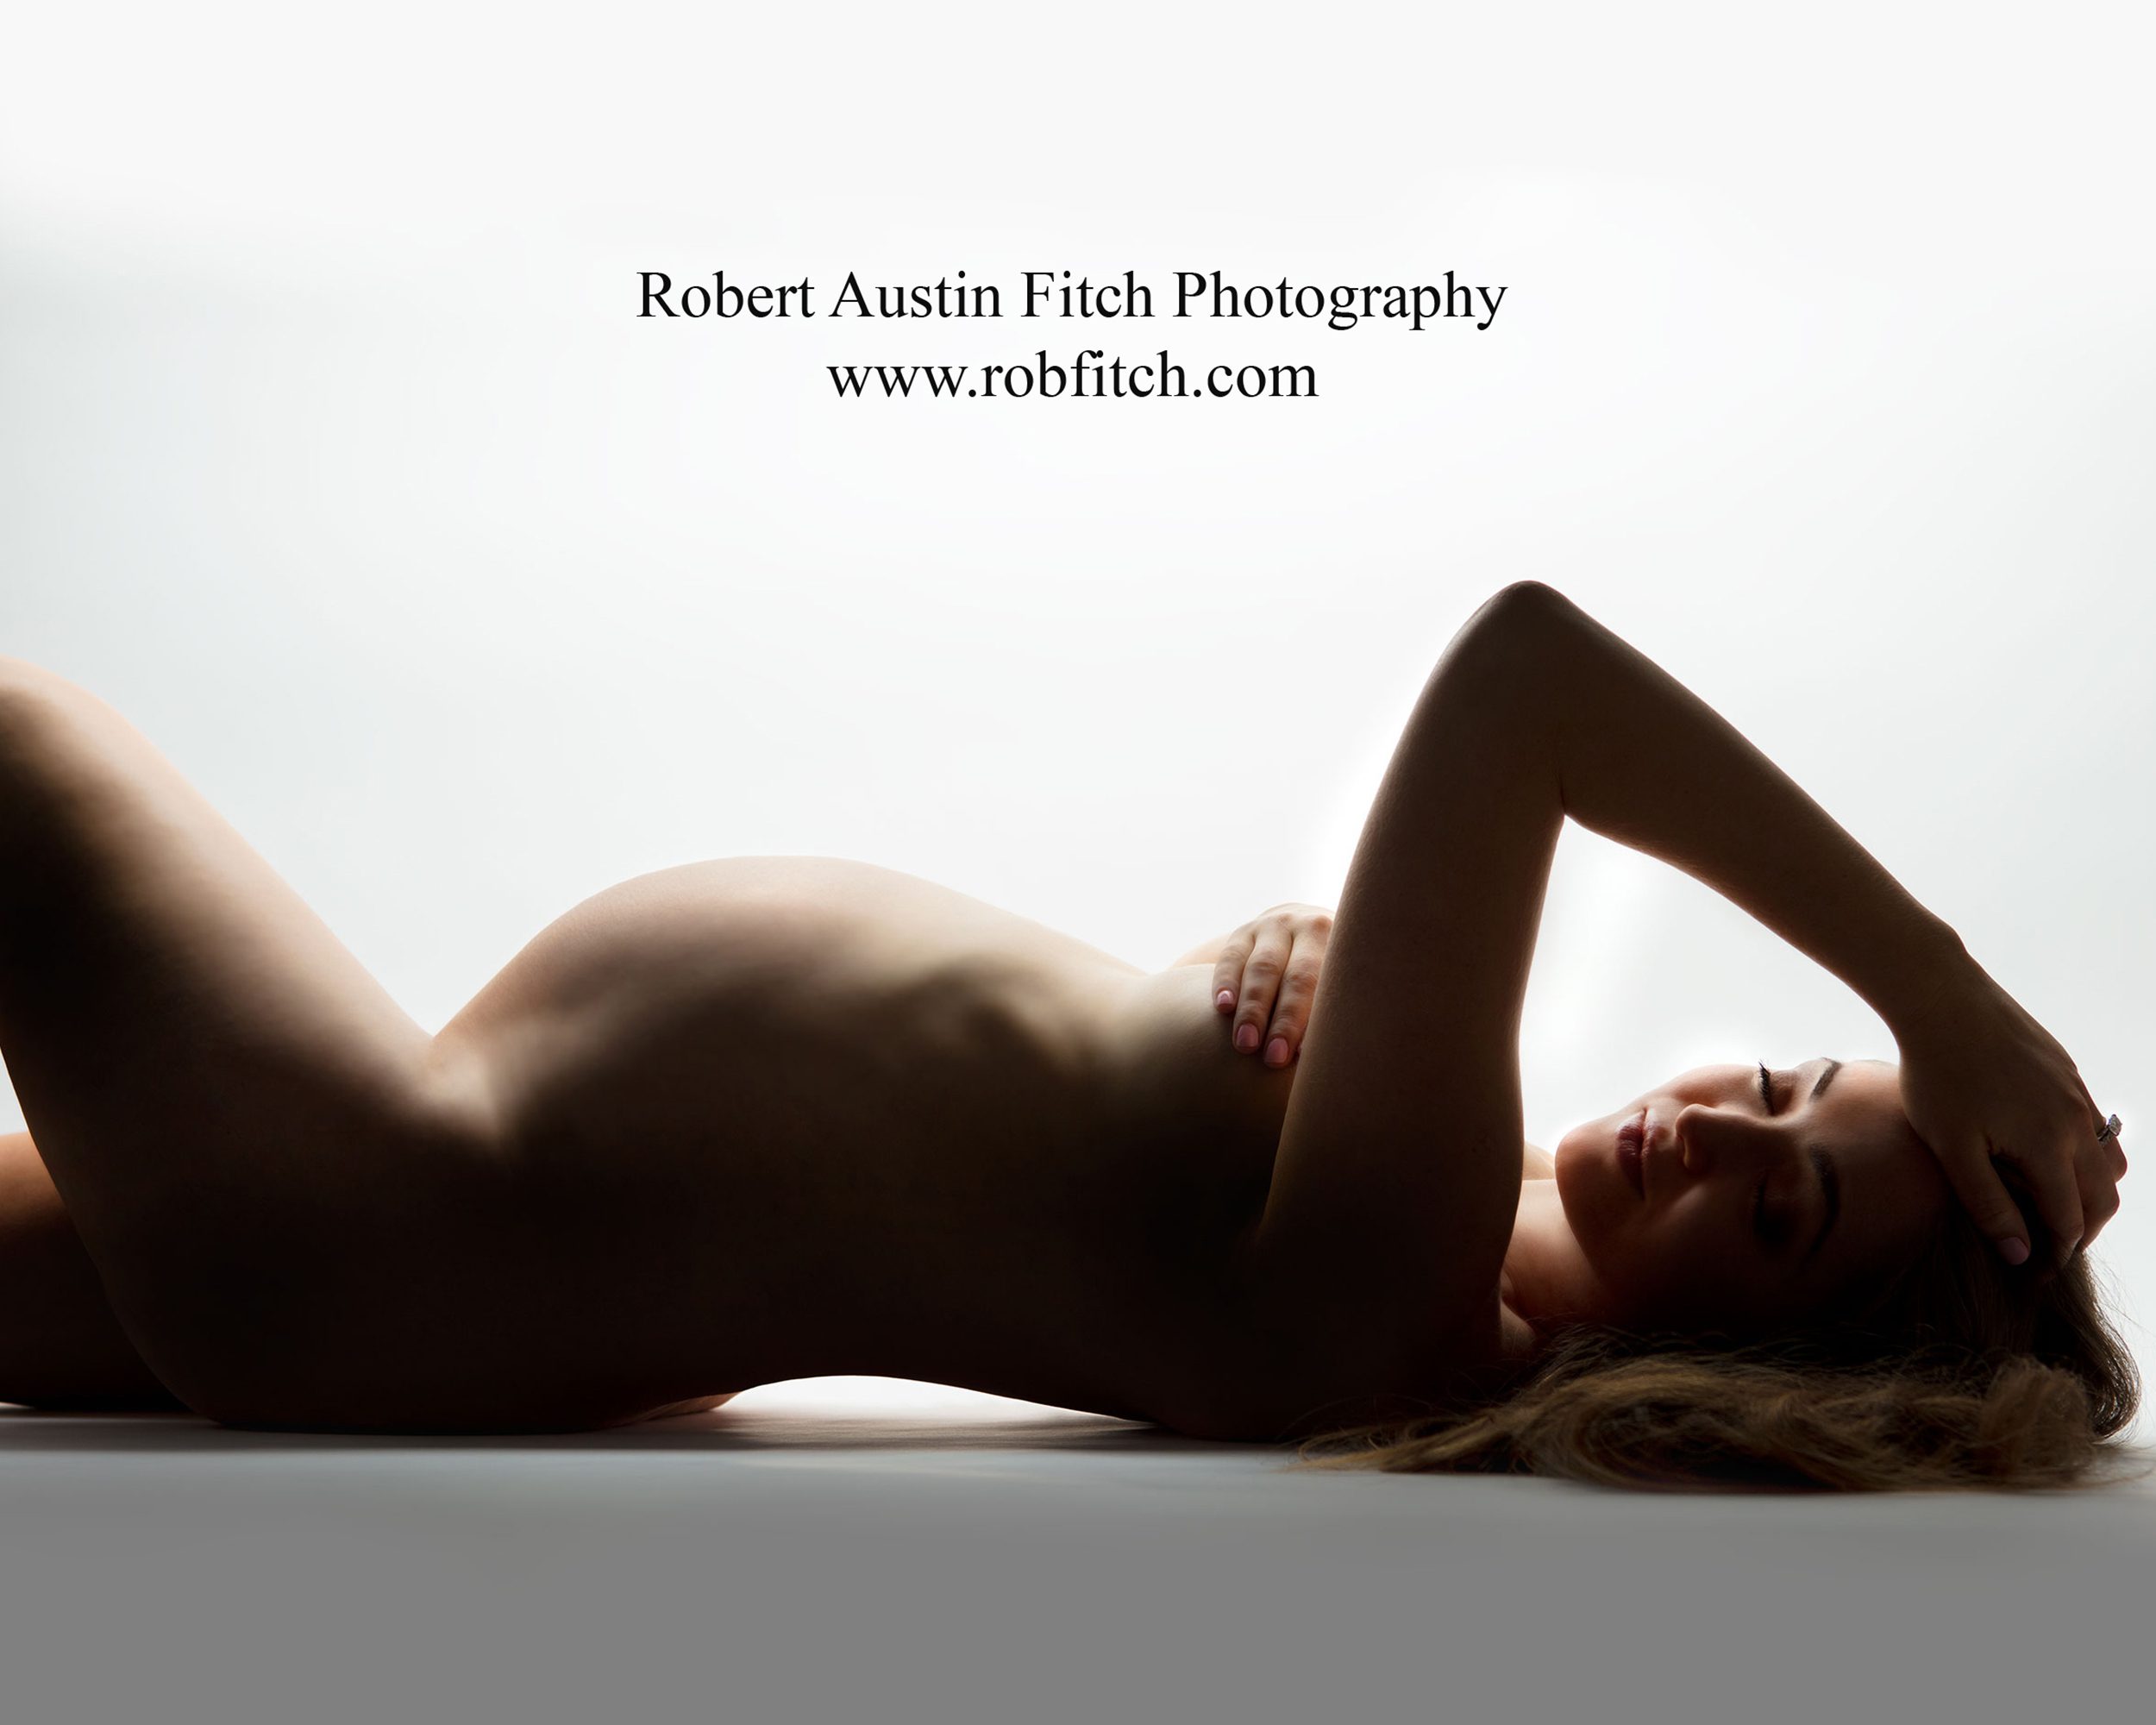 Artistic Nude Pregancy Photos NYC NY